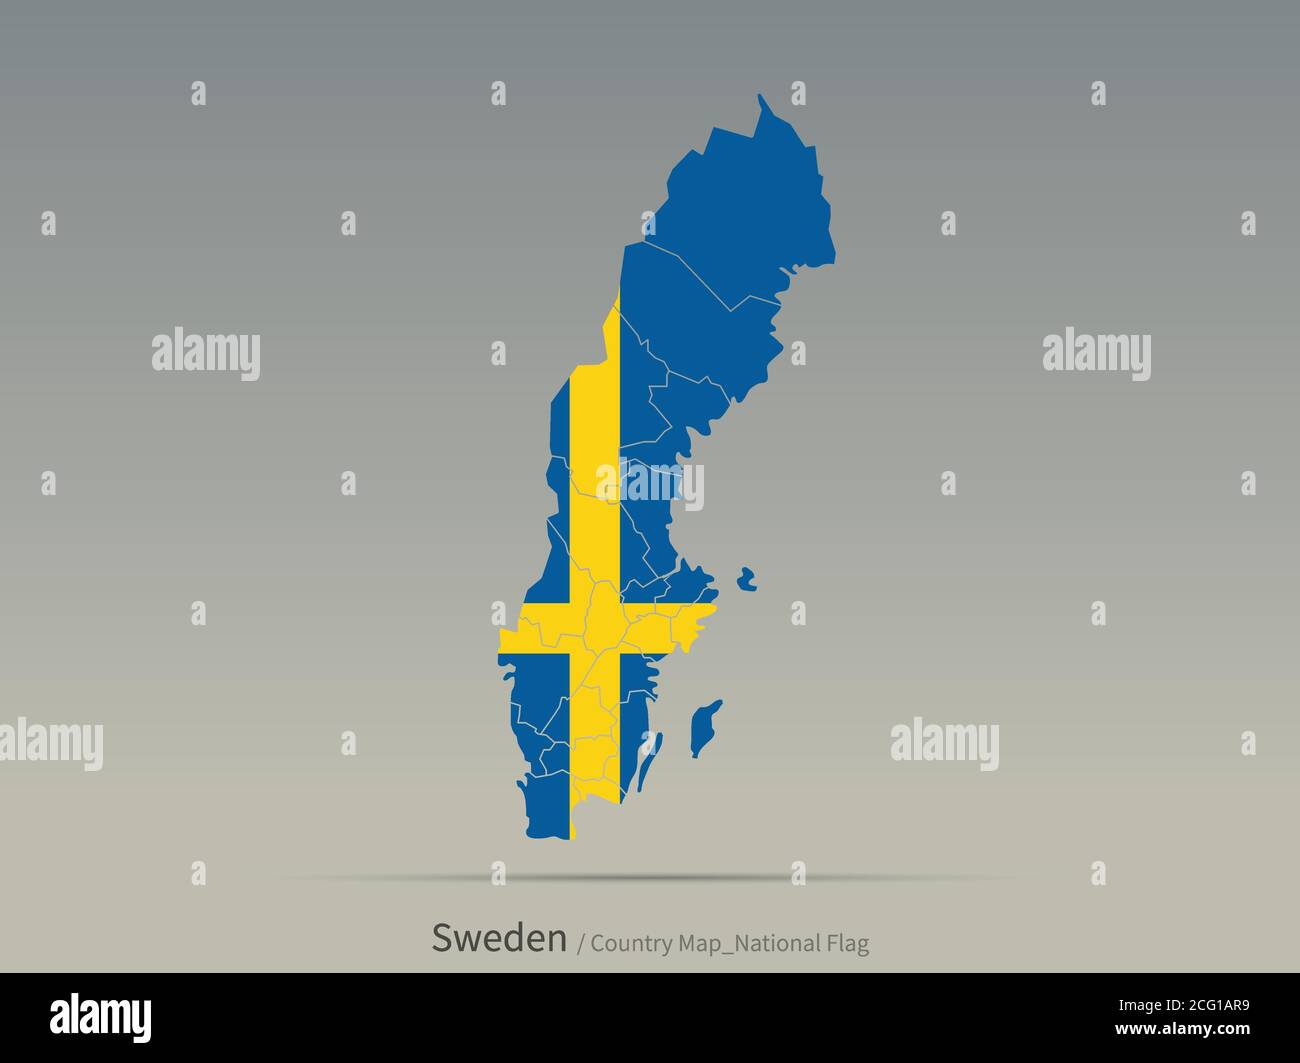 Drapeau de Suède isolé sur la carte. Carte et drapeau des pays européens. Illustration de Vecteur